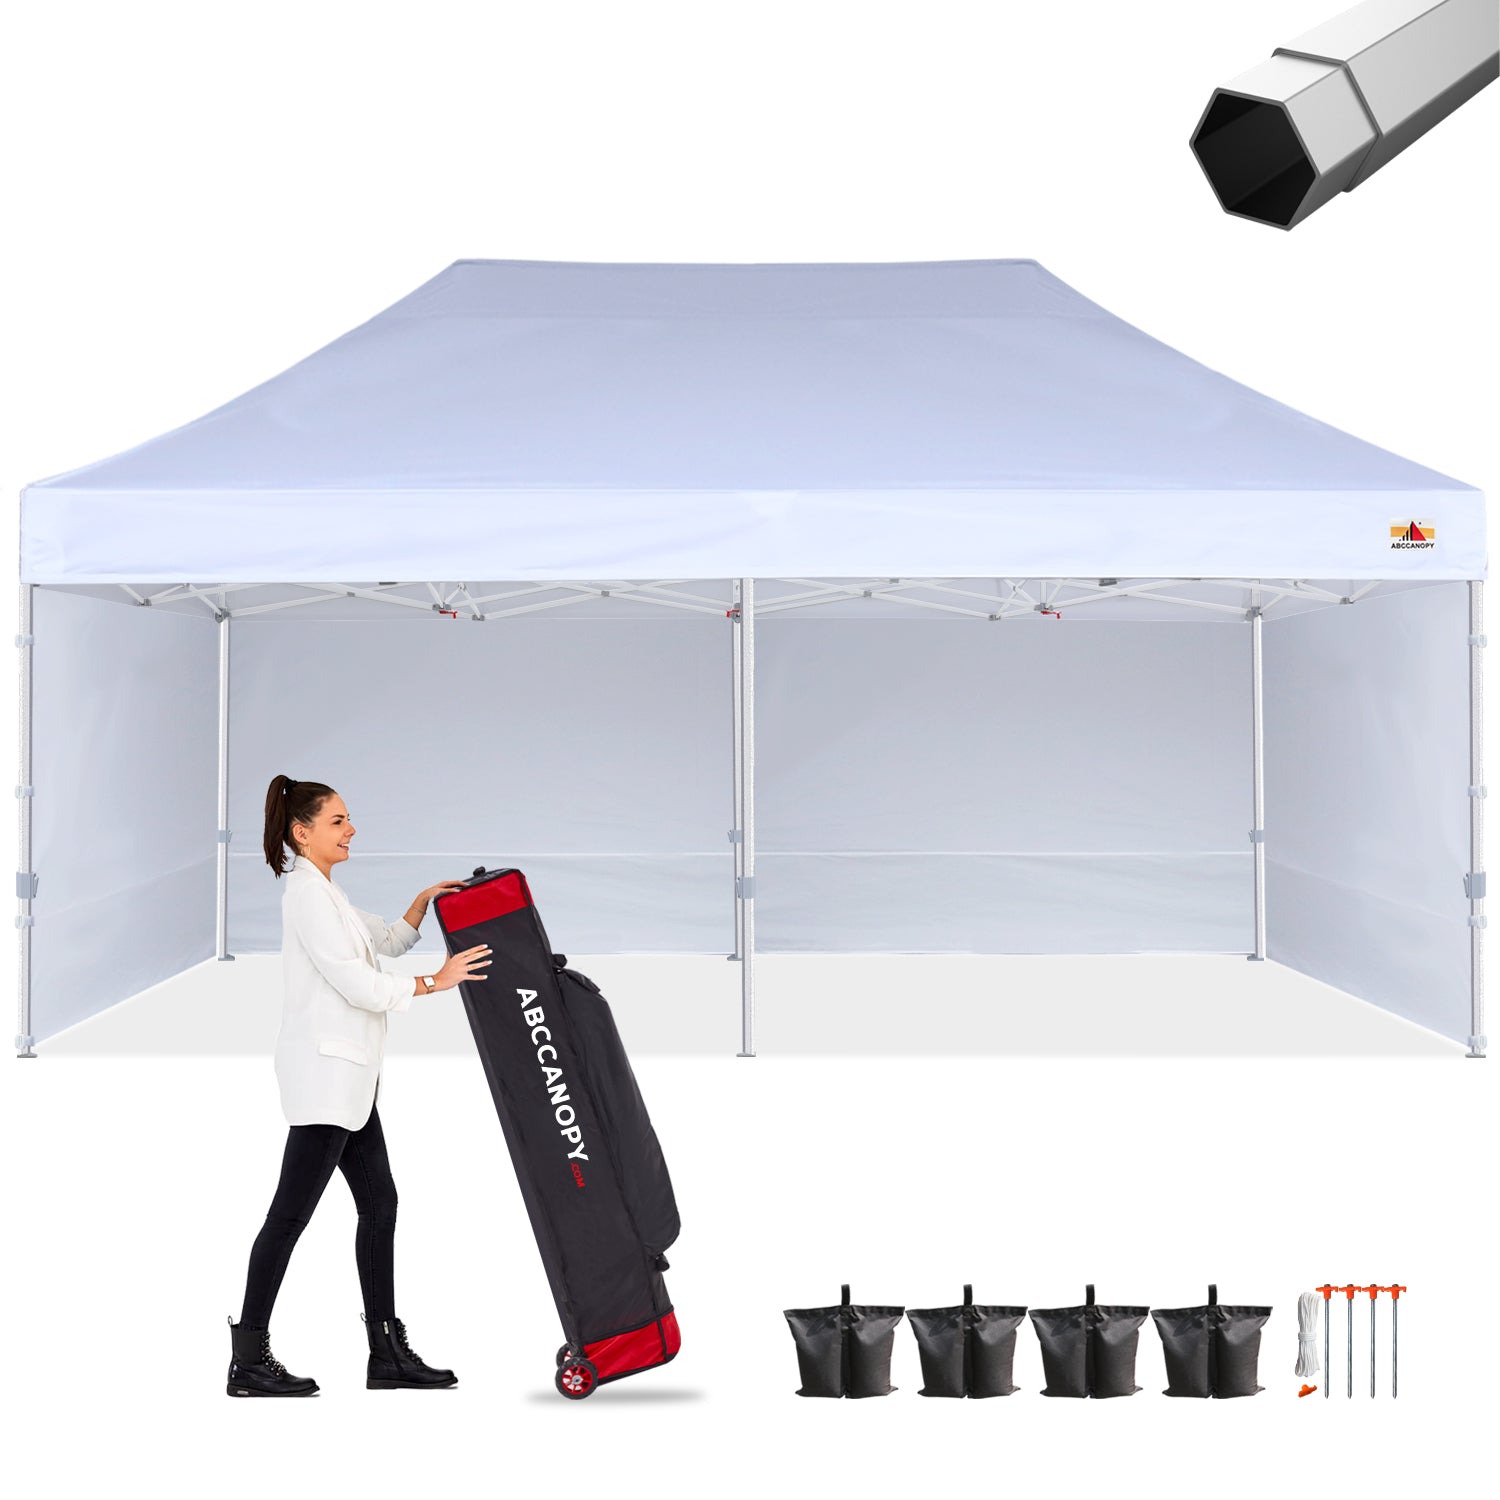 S2 Premium Heavy Duty 10x10/10x15/10x20 Canopy Tent with Sidewalls